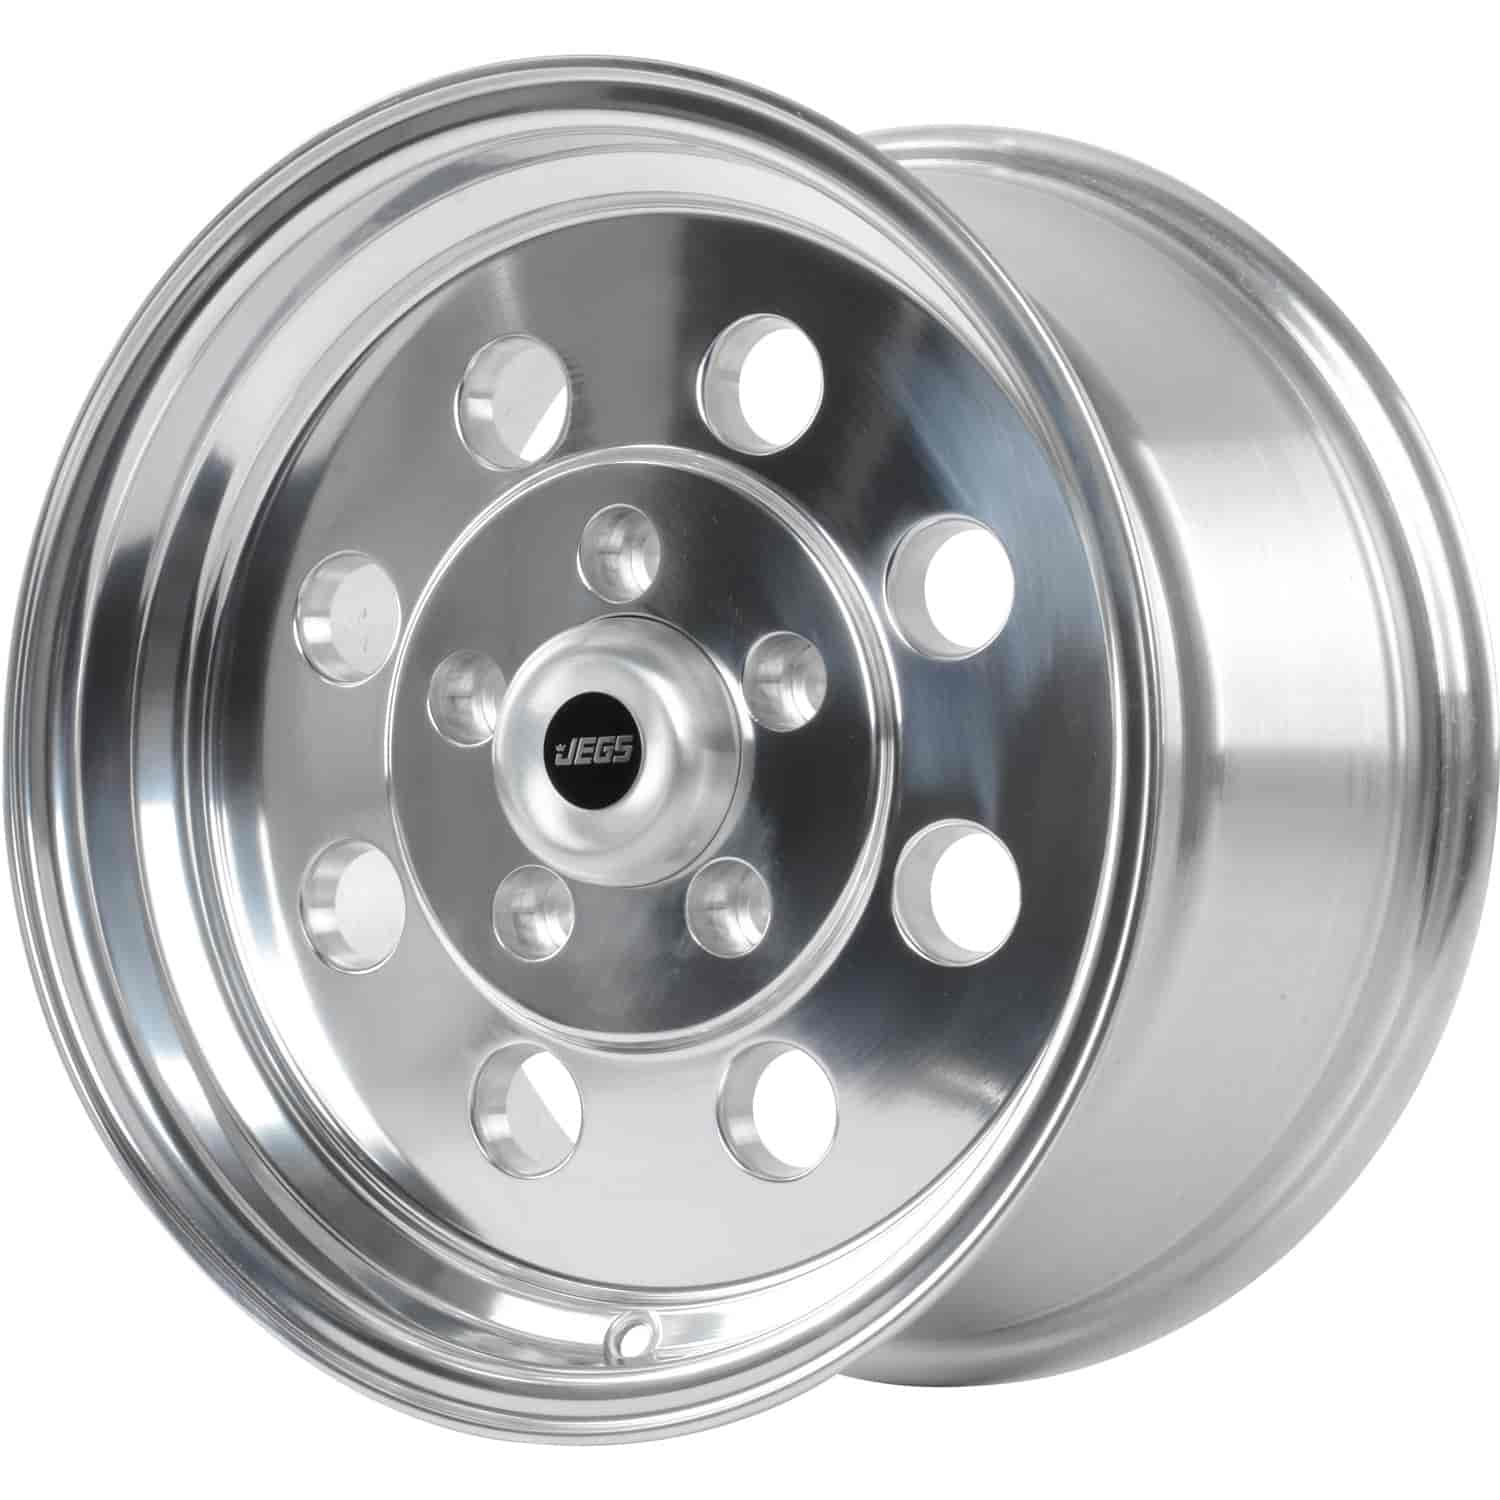 Sport Lite 8-Hole Wheel [Size: 15" x 8"] Polished